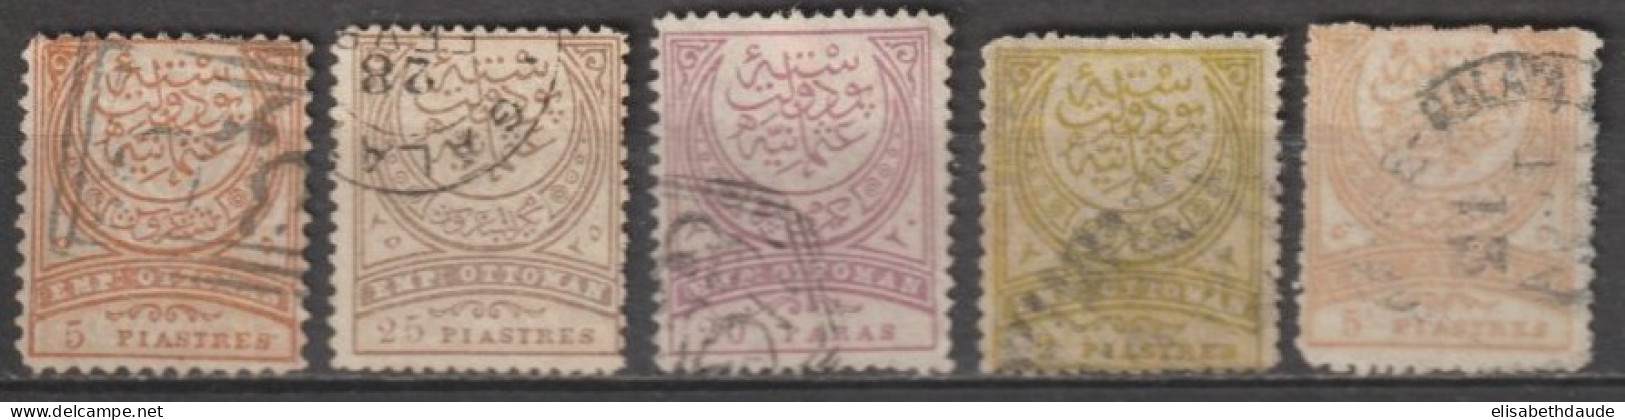 1880 - TURQUIE - YVERT N°59+64+73+76+78 OBLITERES - COTE = 97.5 EUR. - Used Stamps